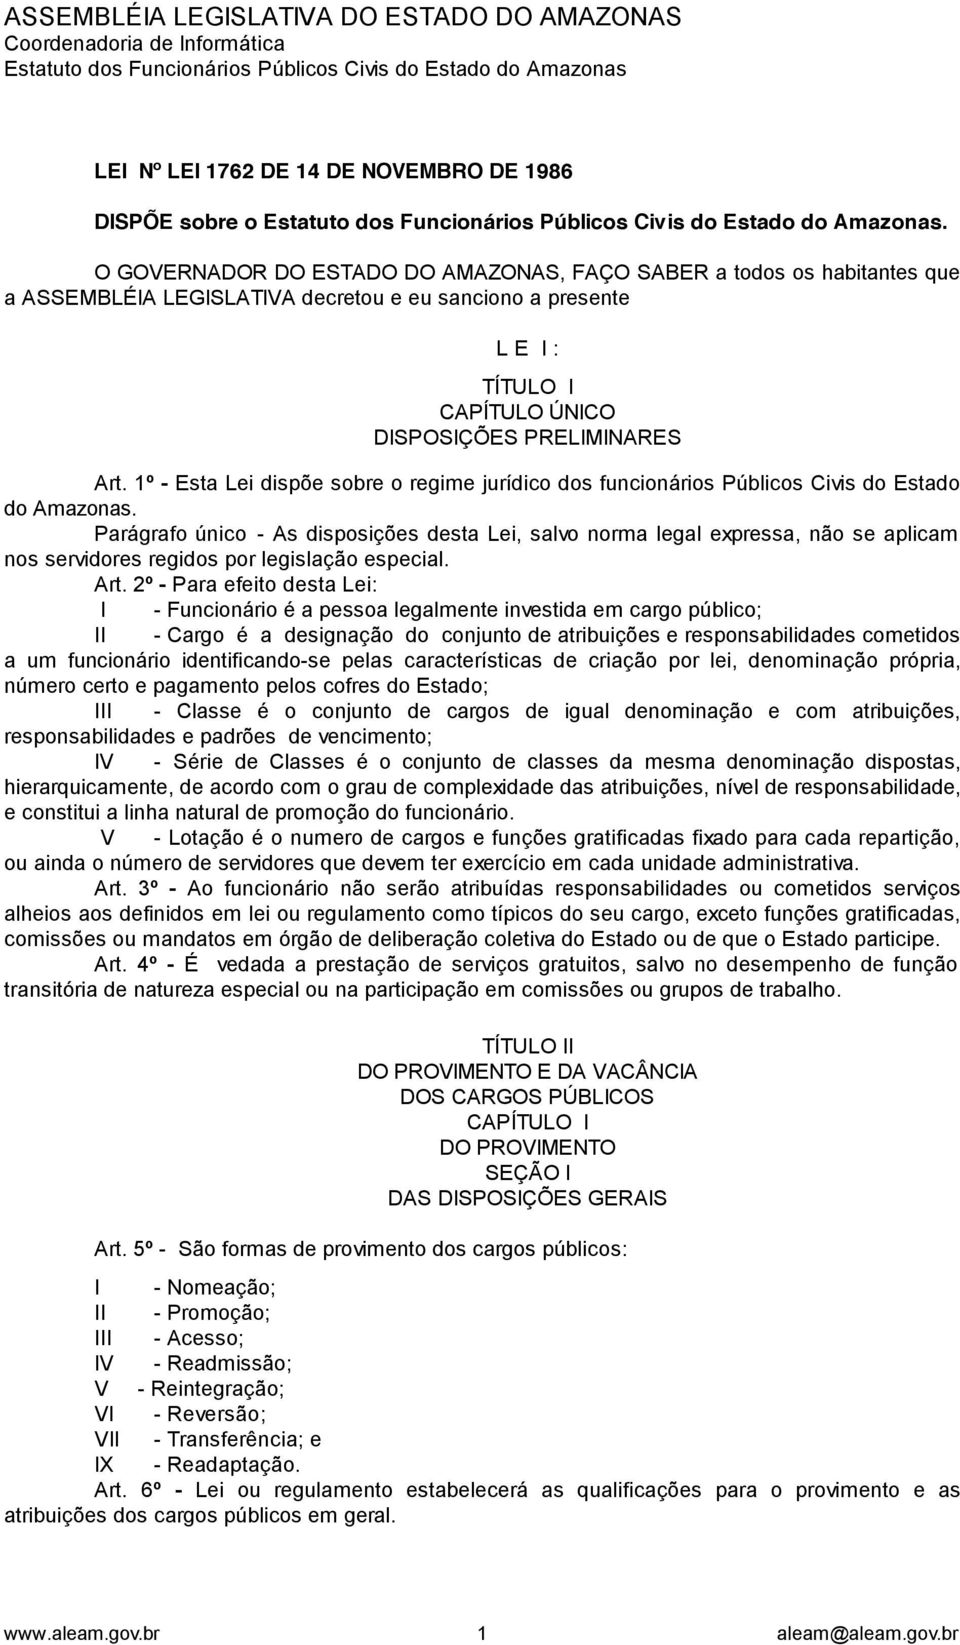 1º - Esta Lei dispõe sobre o regime jurídico dos funcionários Públicos Civis do Estado do Amazonas.